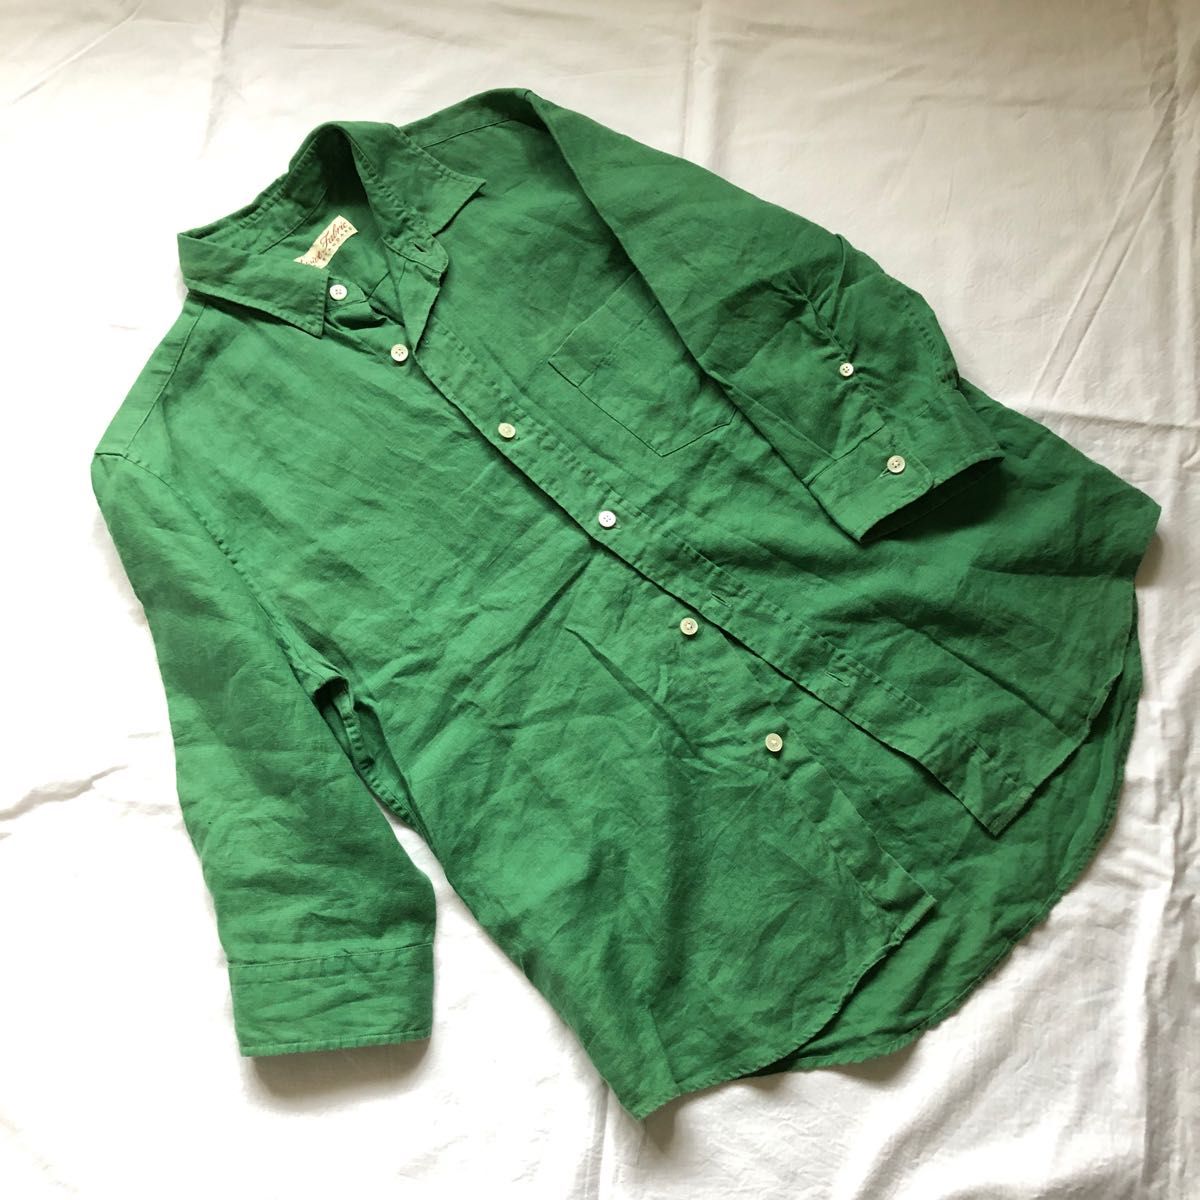 ジャーナルスタンダード　七分袖　オープンカラー　リネンシャツ　リネン100% 麻100% グリーン　緑色   7分袖シャツ